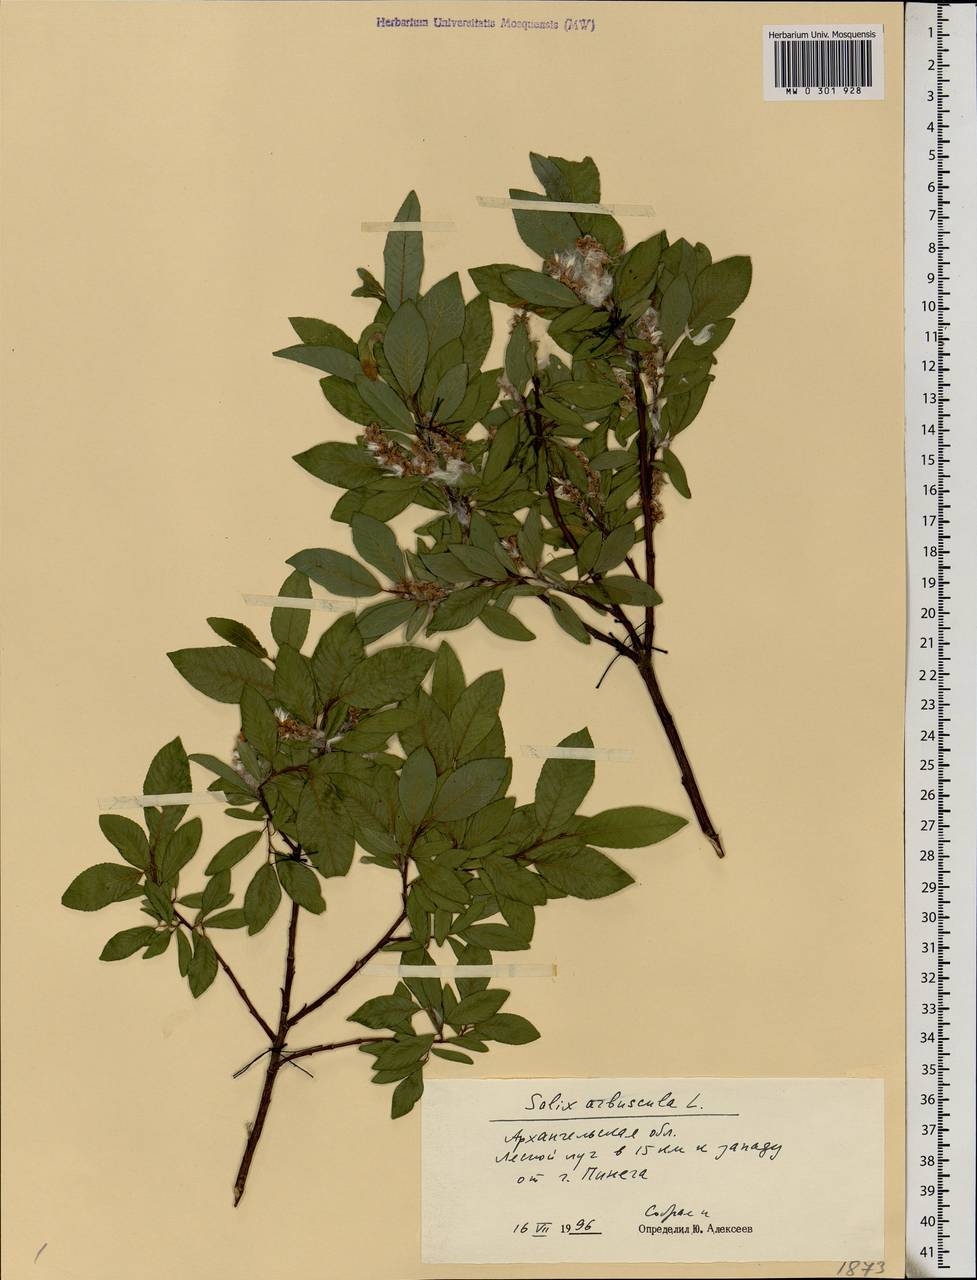 Salix arbuscula L., Eastern Europe, Northern region (E1) (Russia)